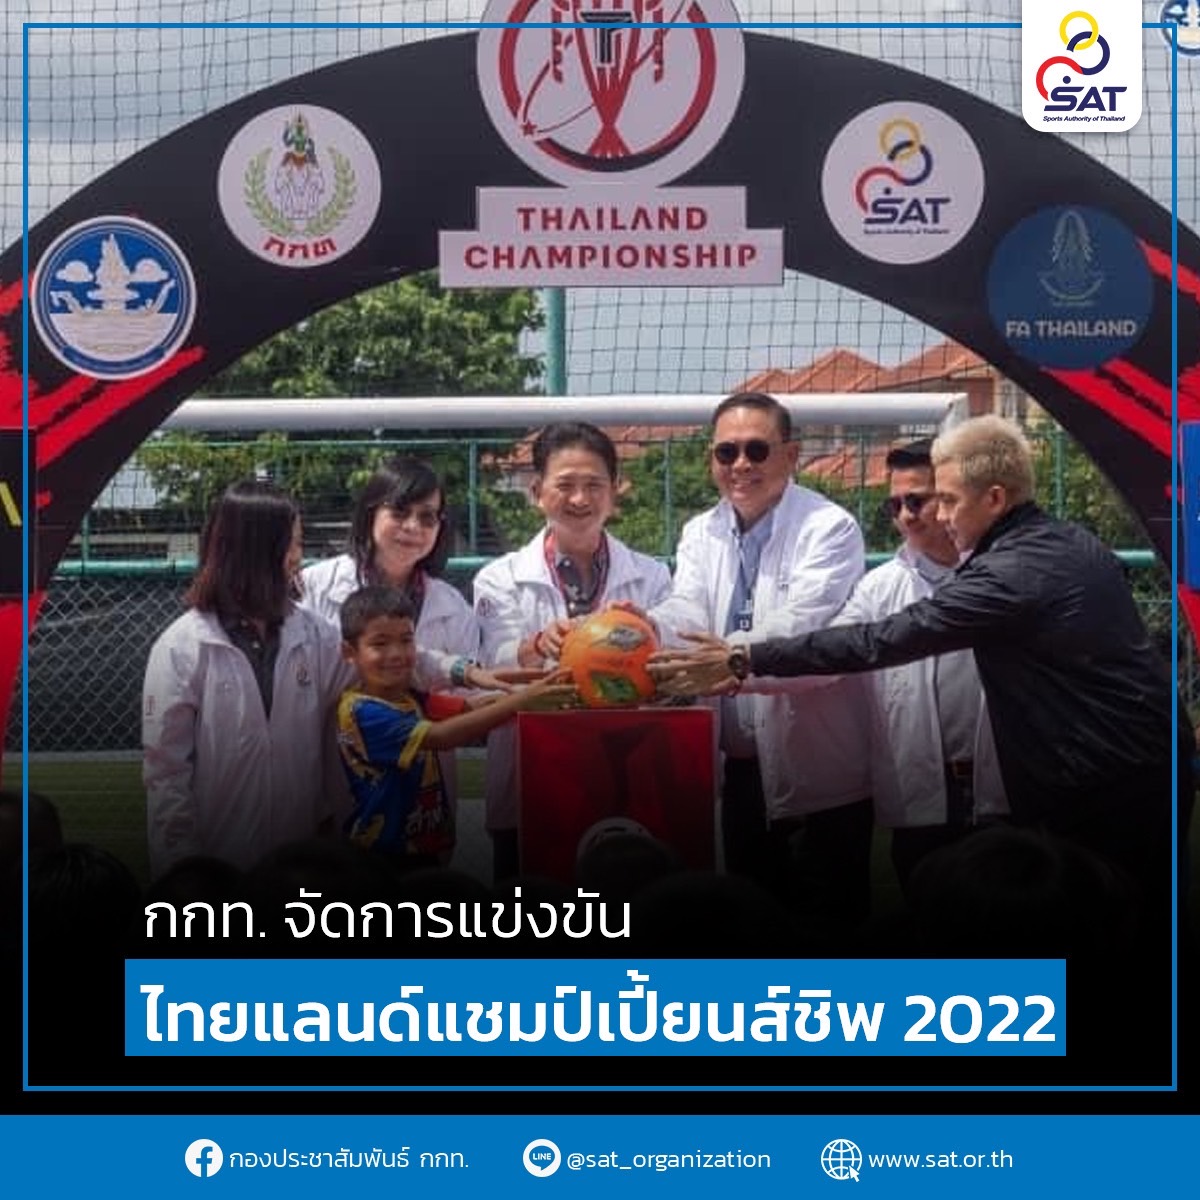 กกท. จัดการแข่งขันไทยแลนด์แชมป์เปี้ยนส์ชิพ 2022 – ข่าวกีฬา